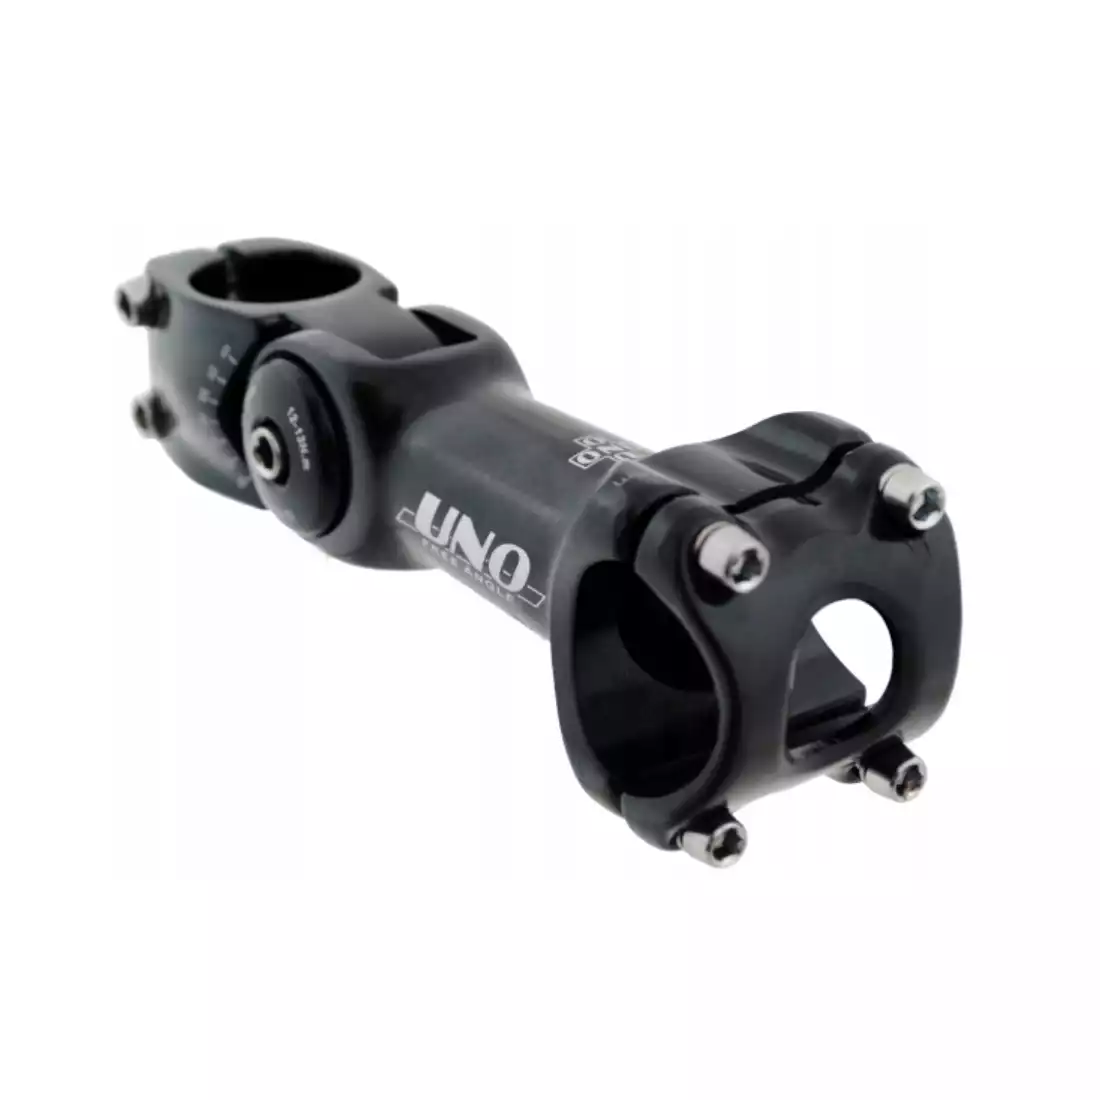 UNO bicycle handlebar bracket 31,8x125 mm, verstellbar, schwarz